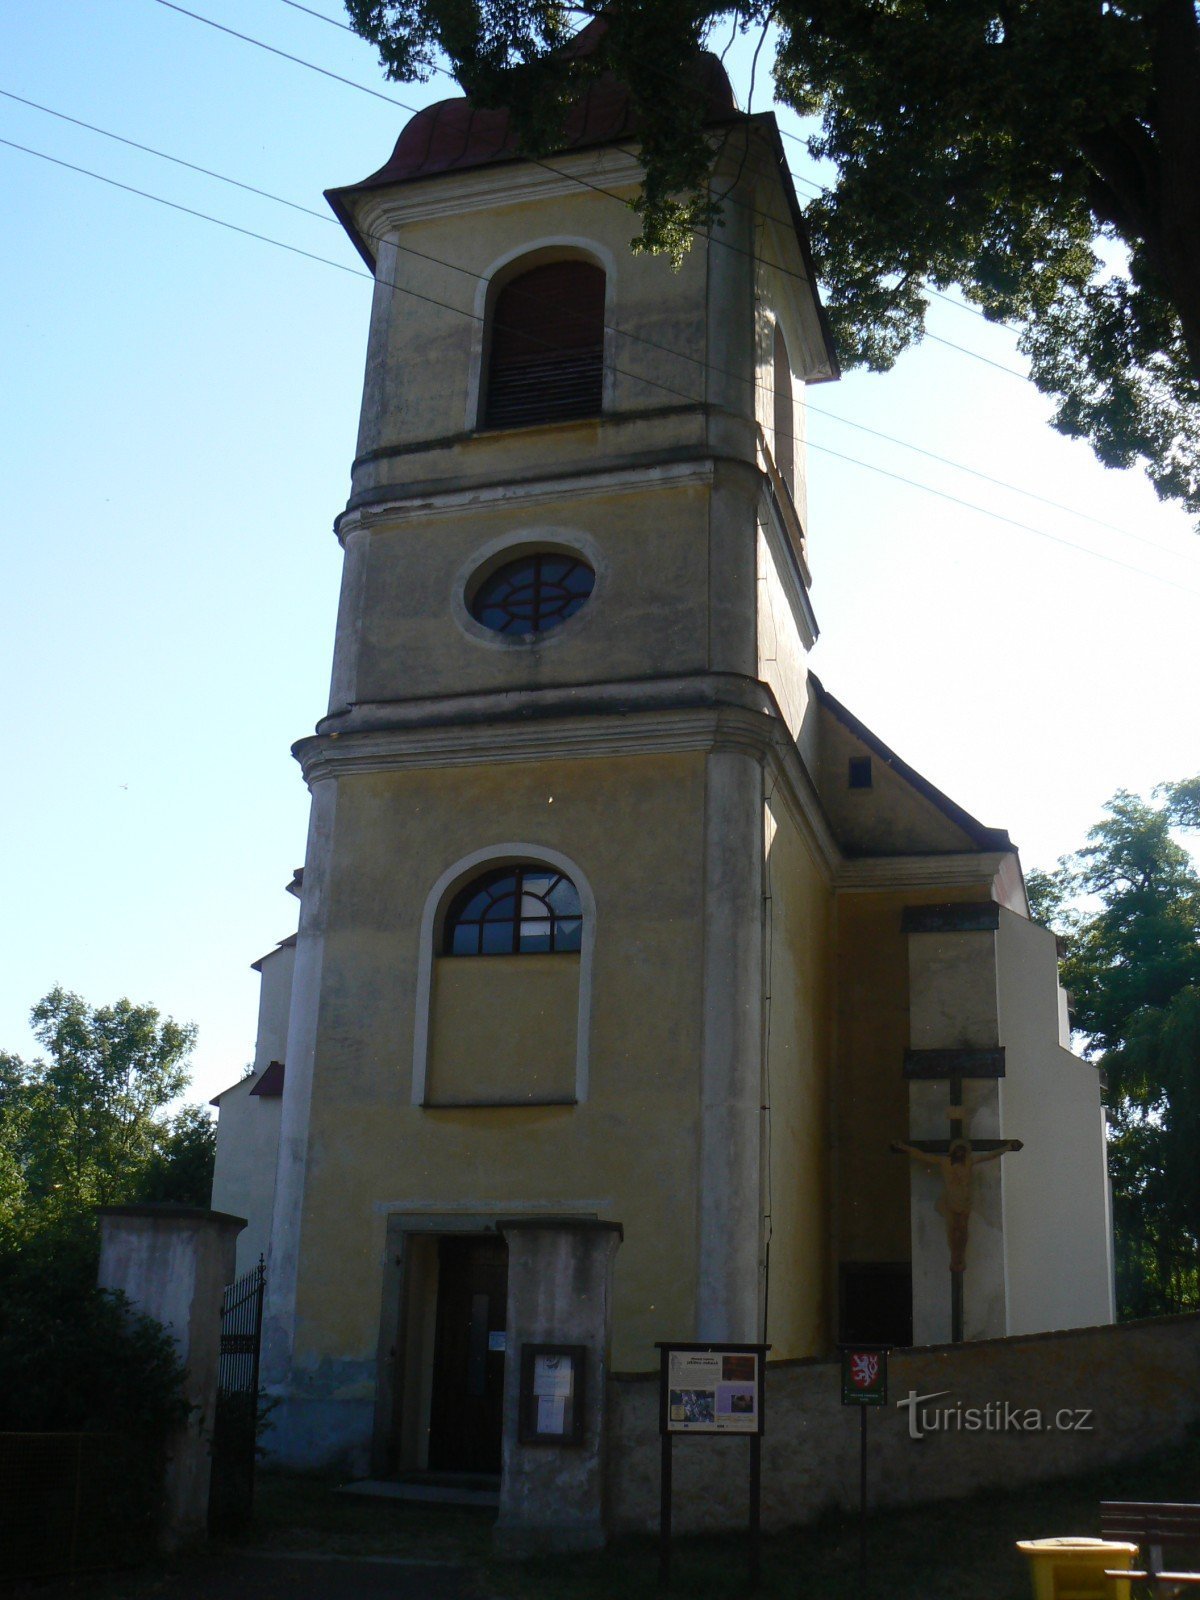 Церковь св. Вацлав